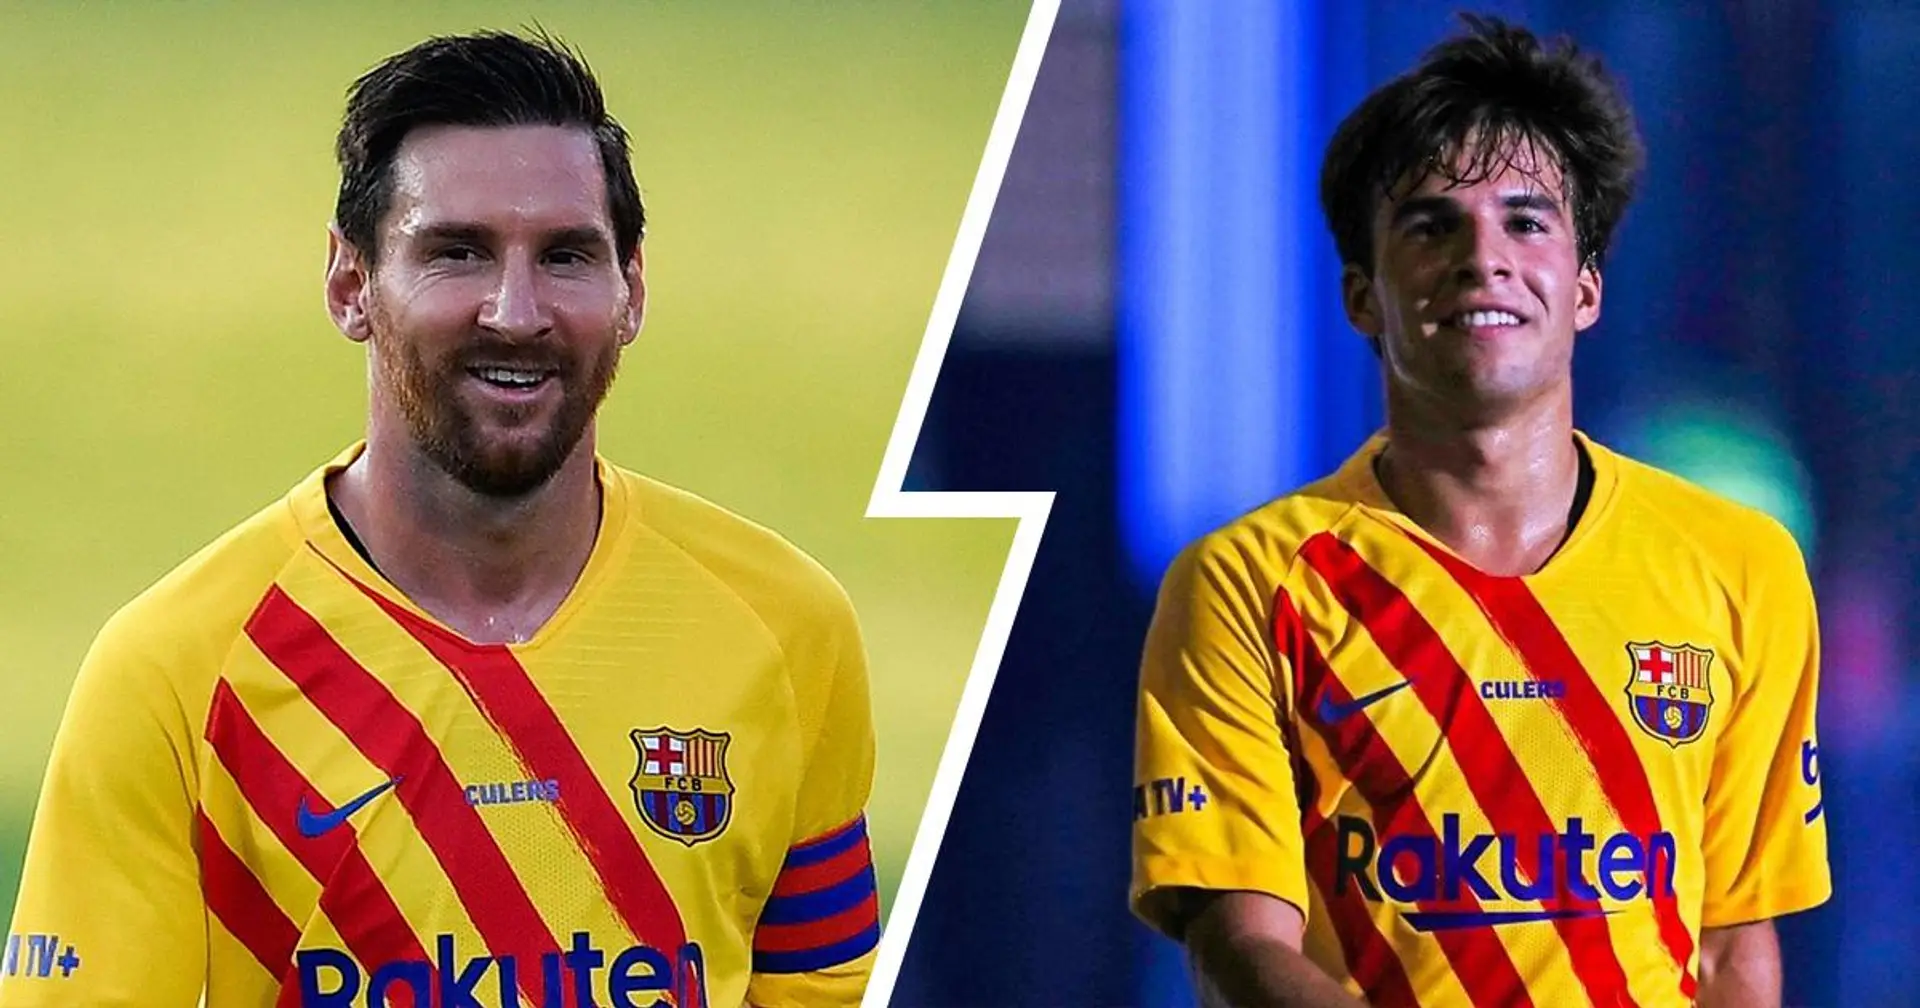 4 observaciones del partido ante el Nástic que deberían haber puesto una sonrisa en el rostro de Messi después de la turbulenta saga de transferencias